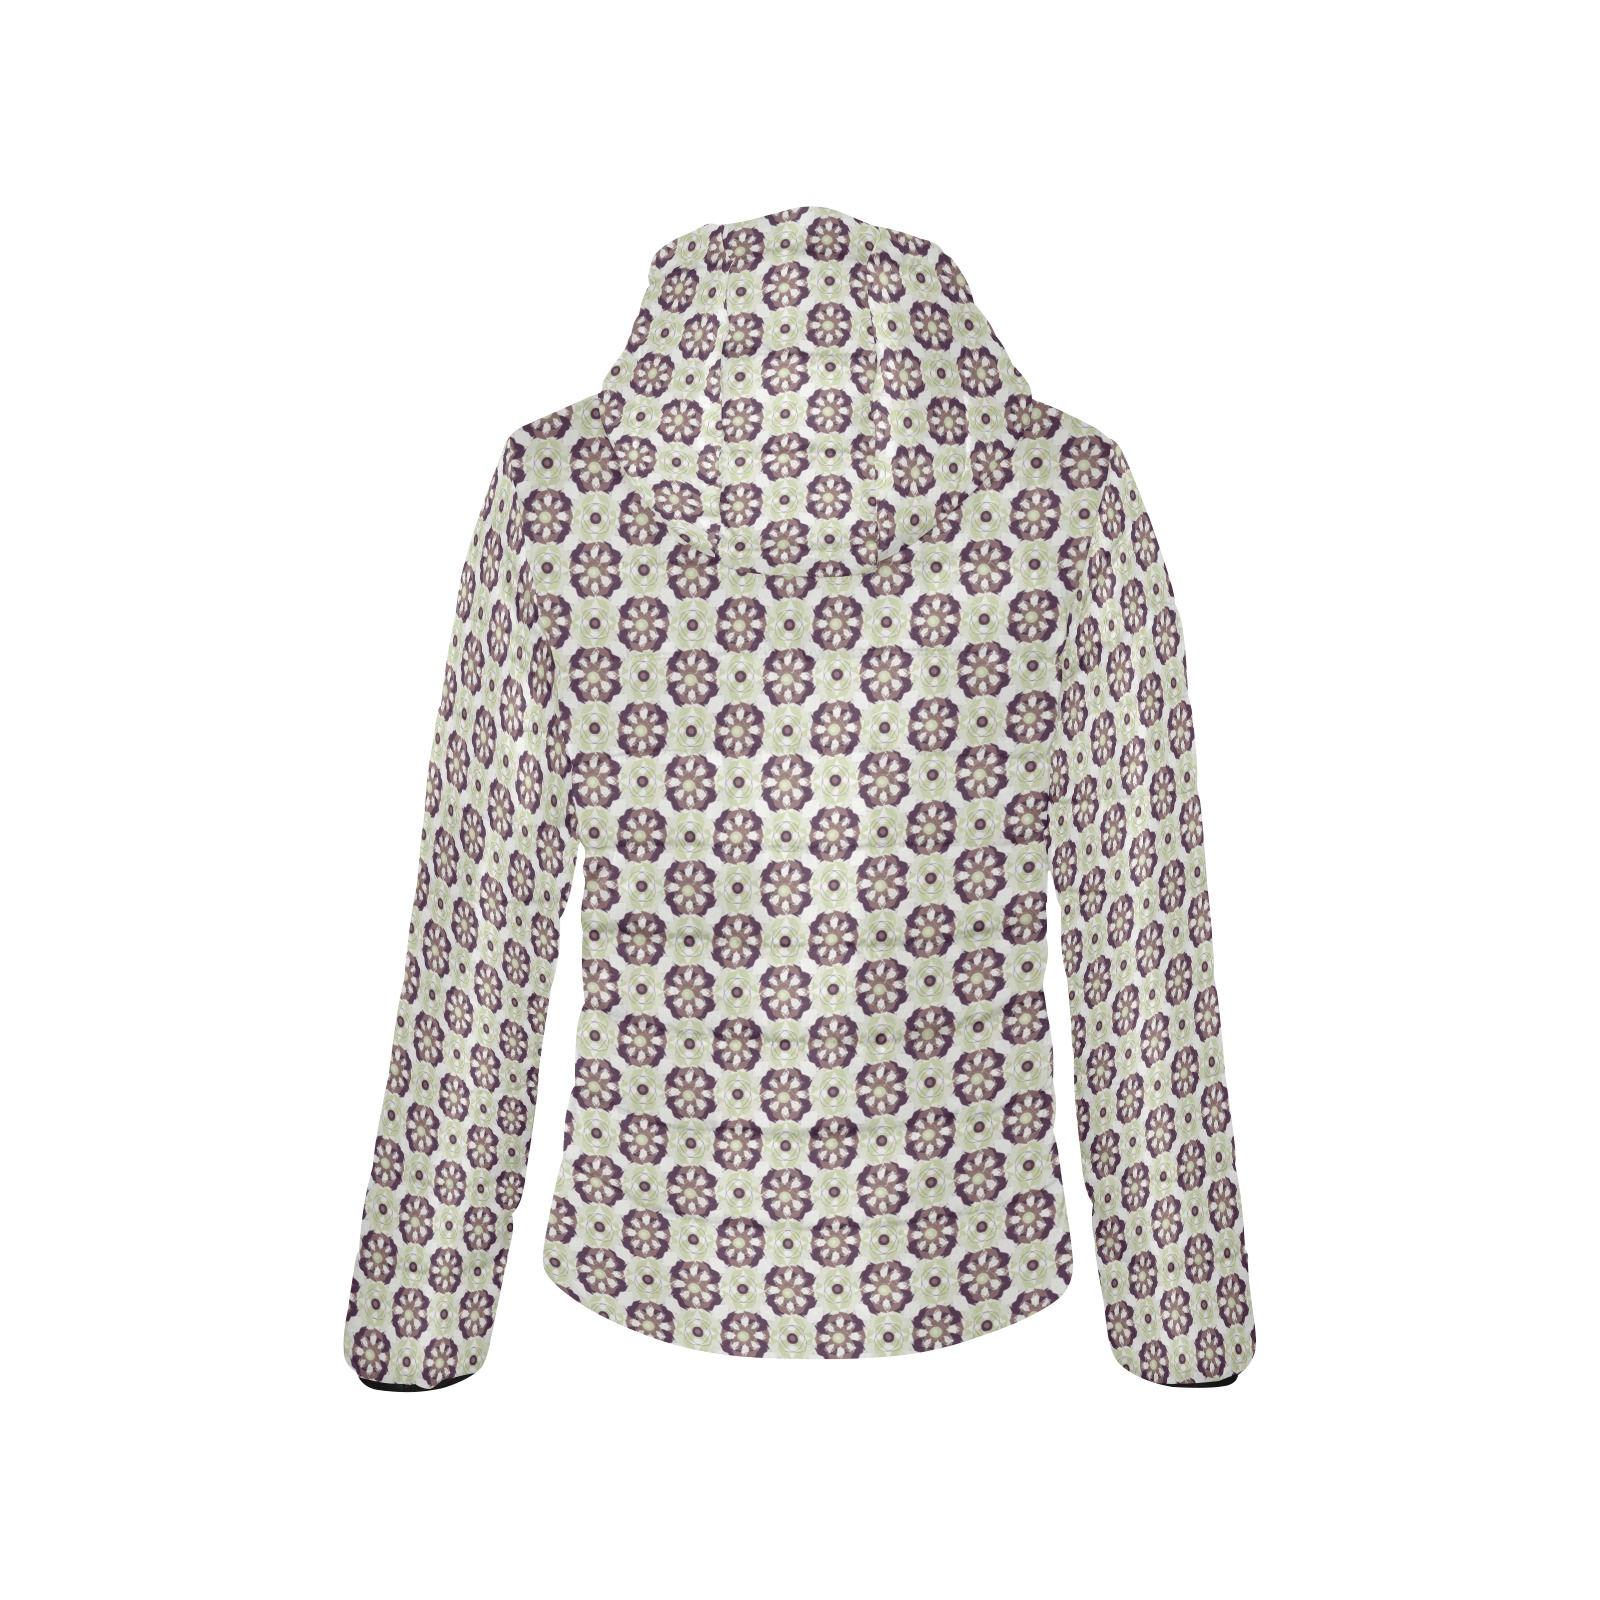 digitaldesign Women's Padded Hooded Jacket (Model H46)